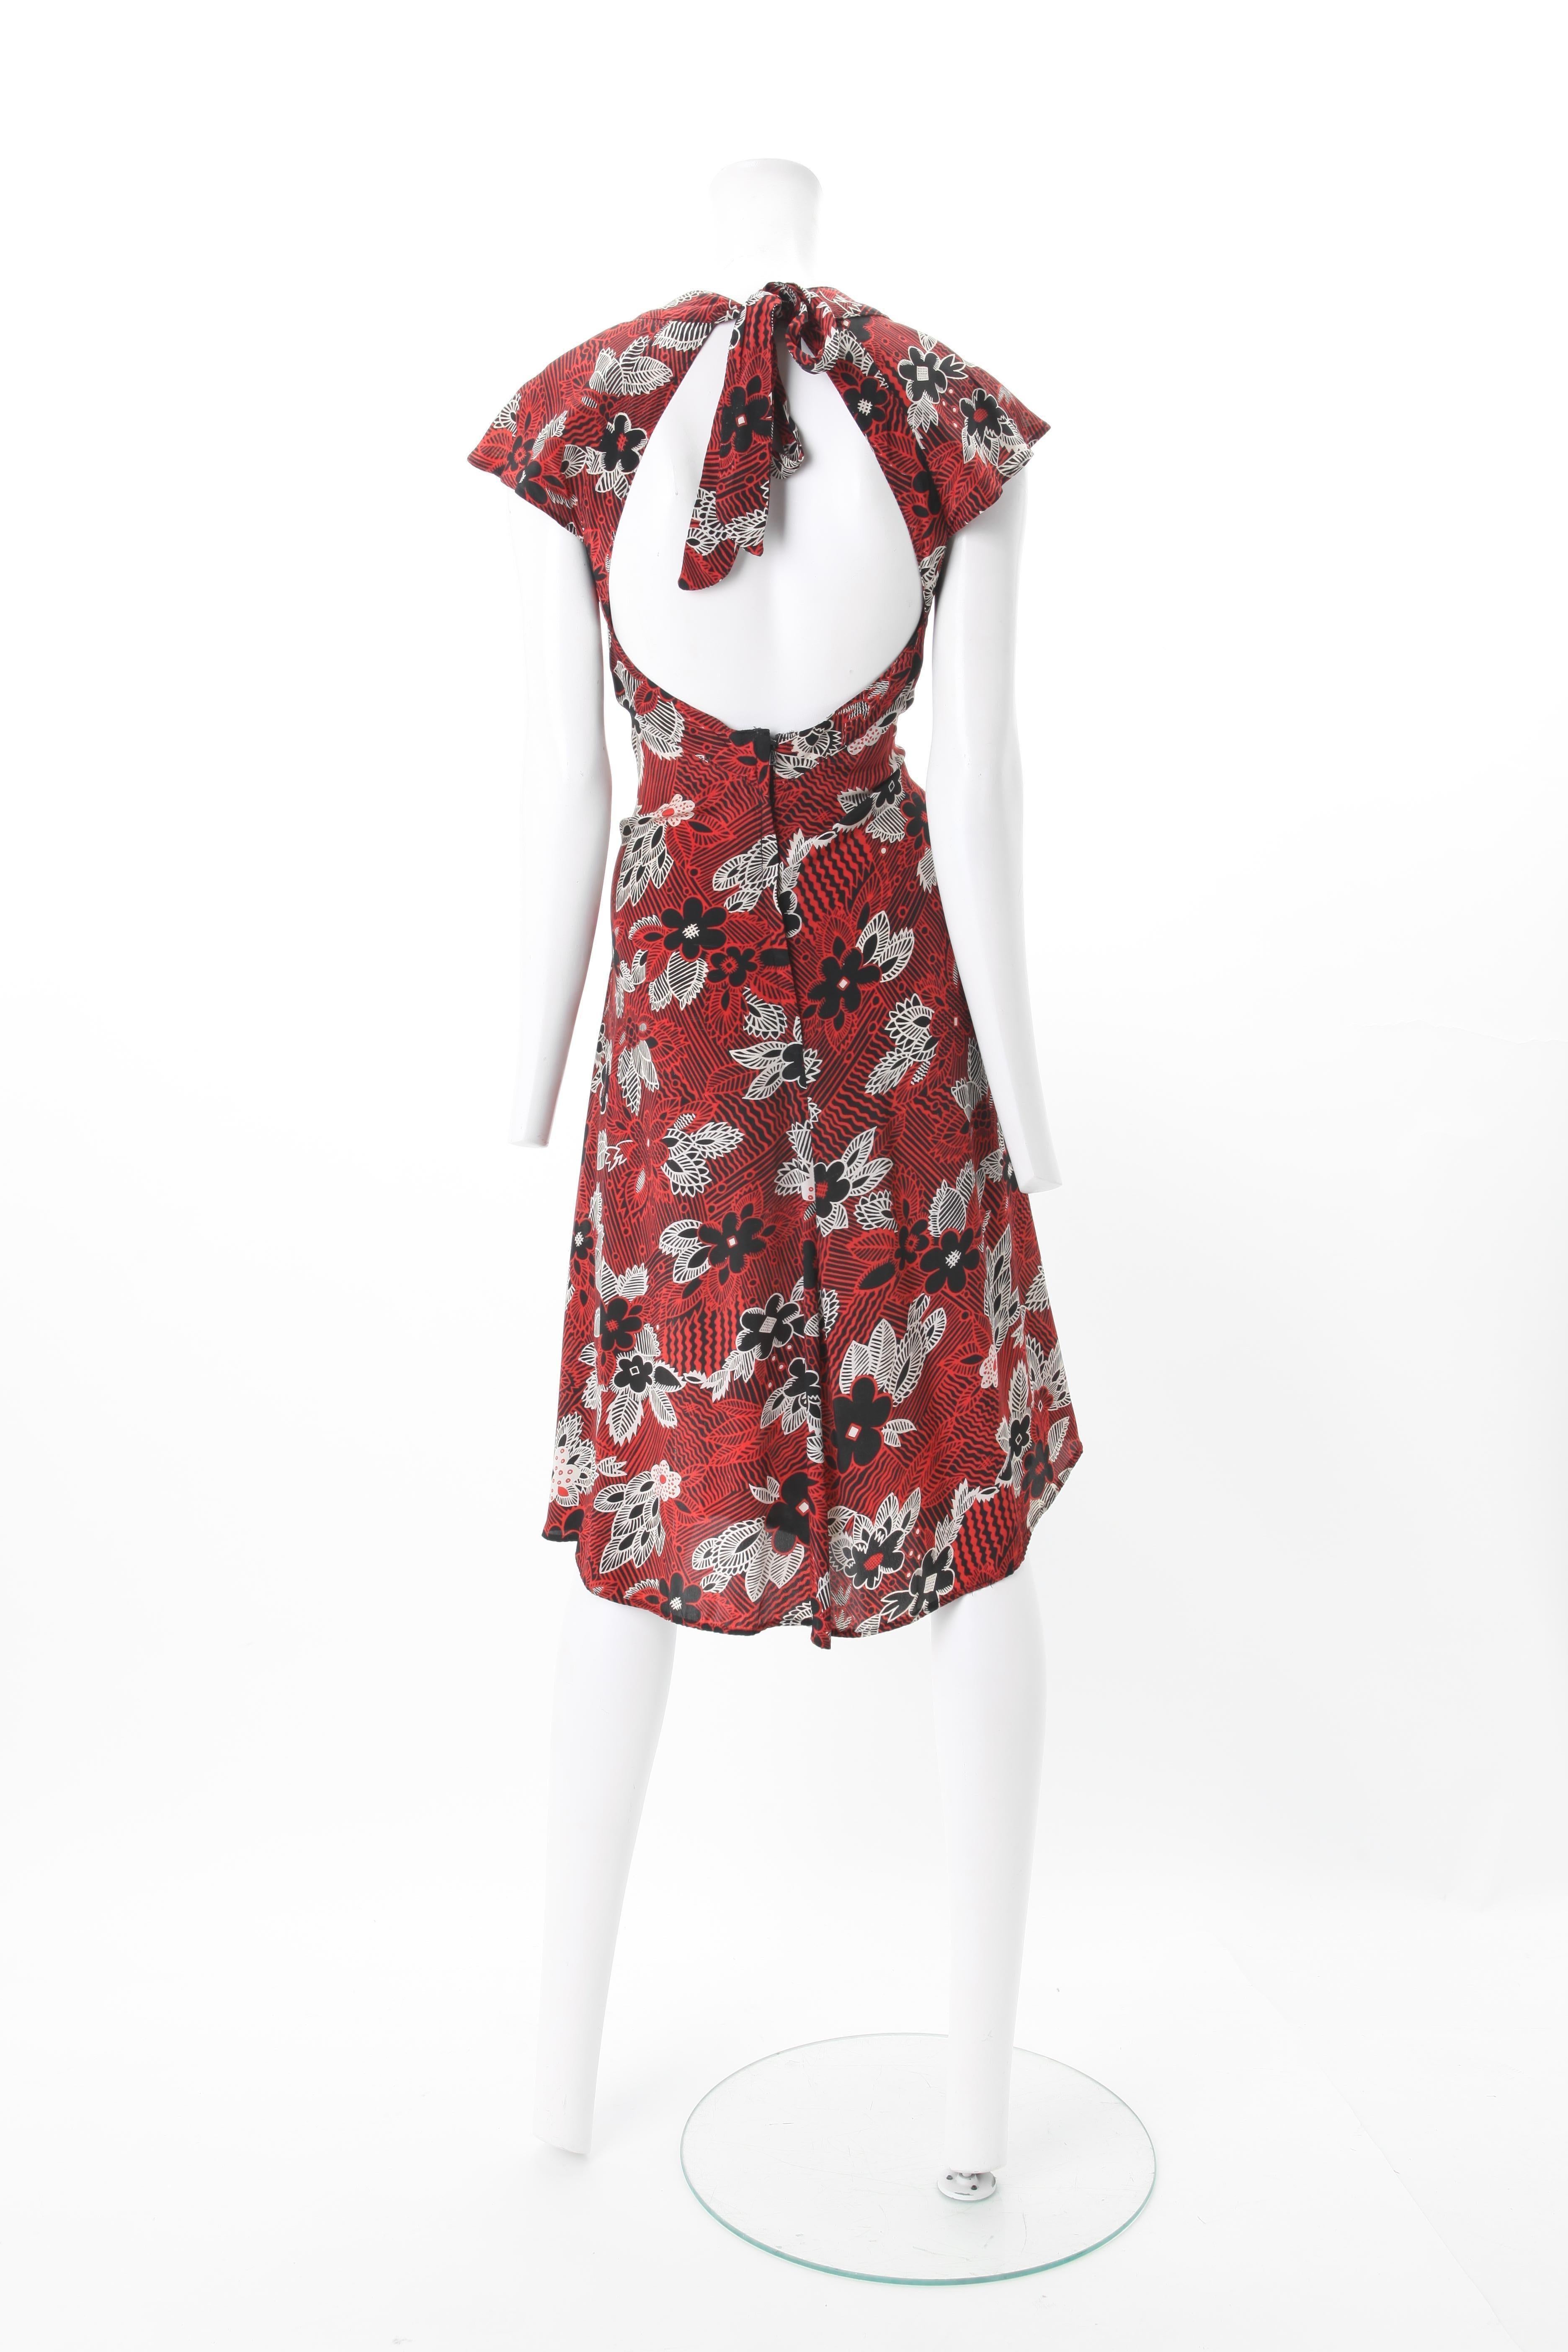 Marron Ossie Clark Celia Birtwell - Robe imprimée des années 1970, portée par Julia Roberts en vente